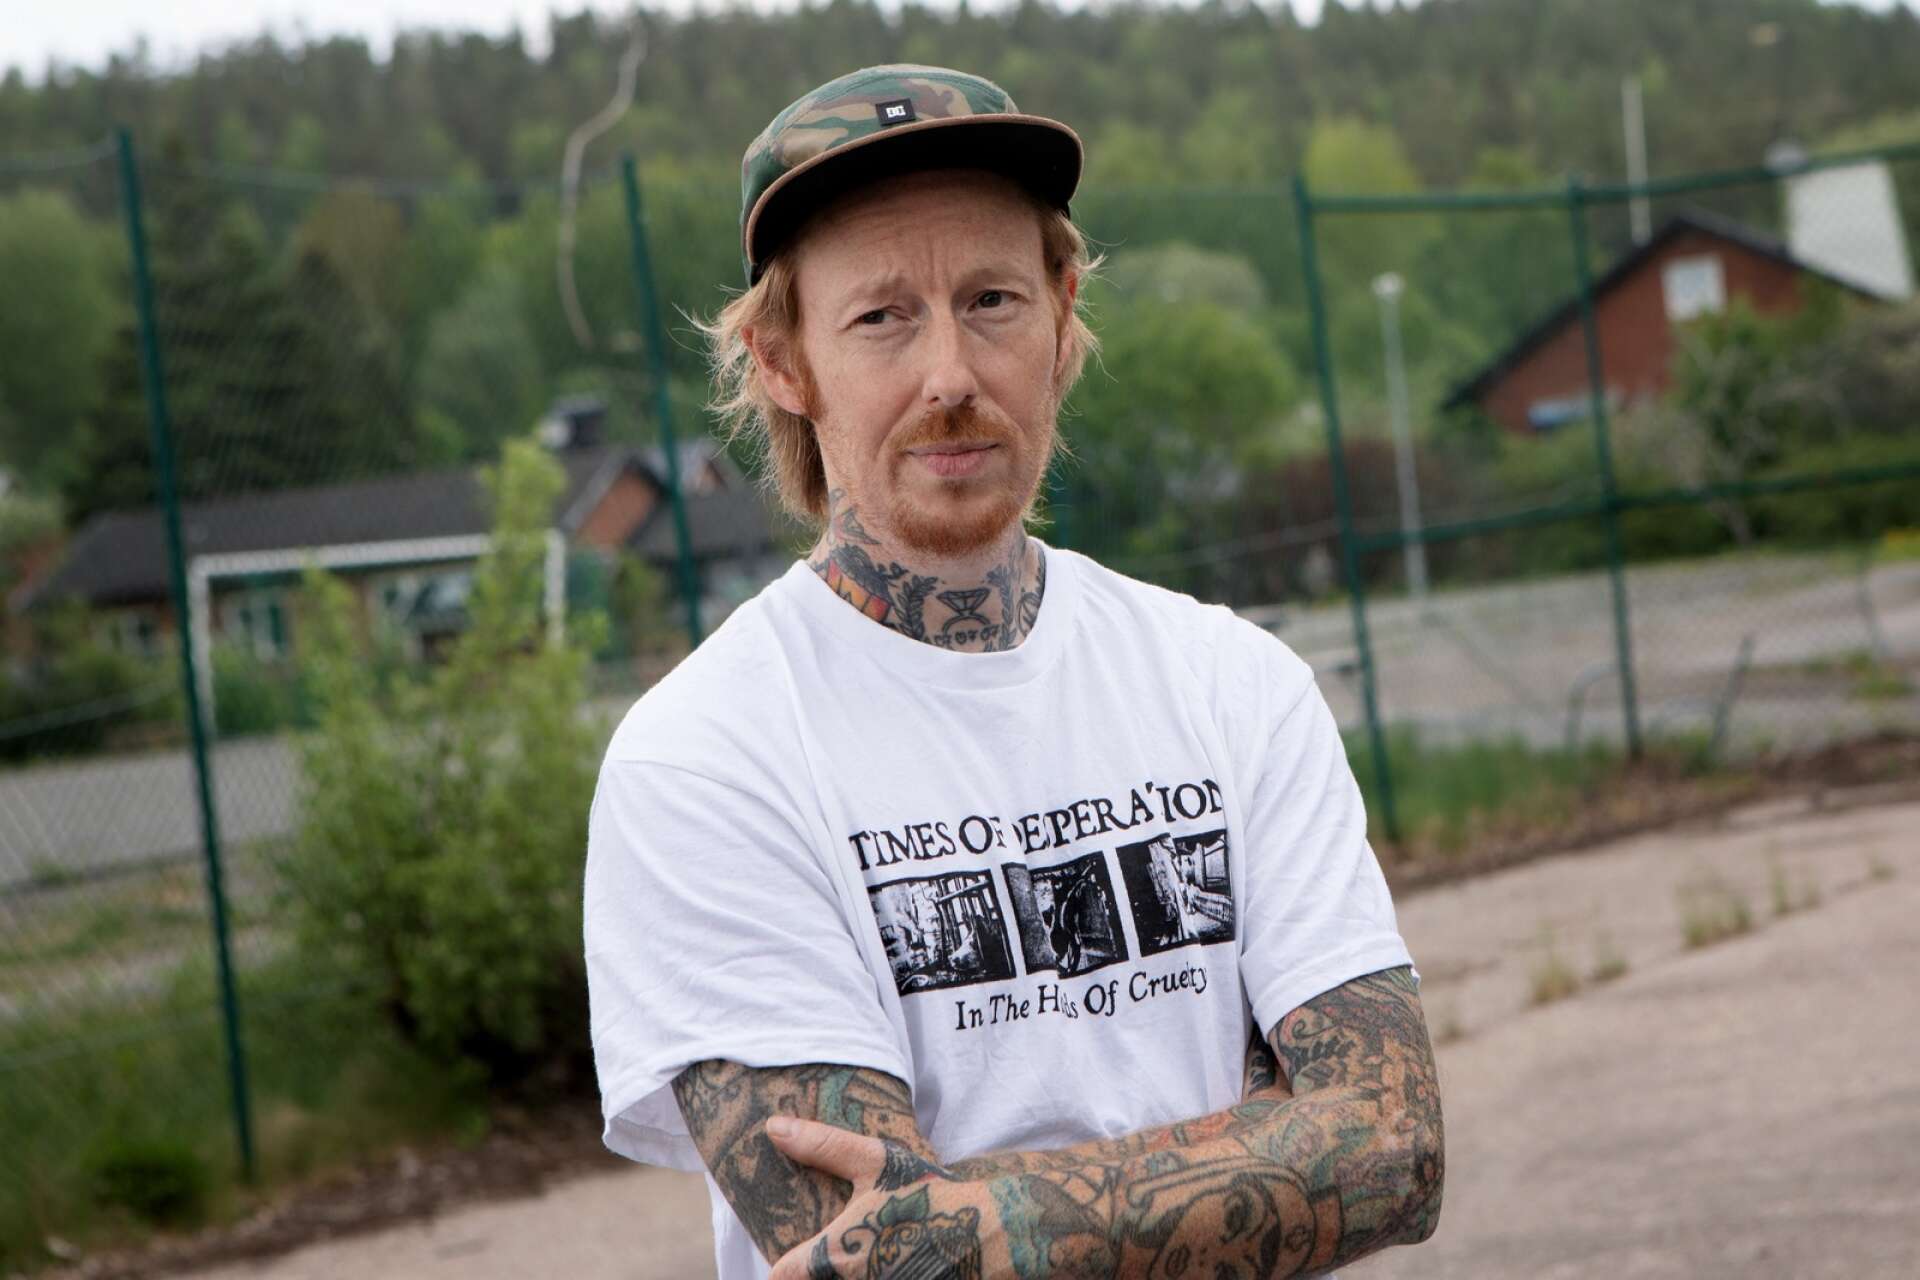 Daniel Nätterdal hoppas på en snar lösning när det gäller placeringen av skateboardramper i Degerfors.